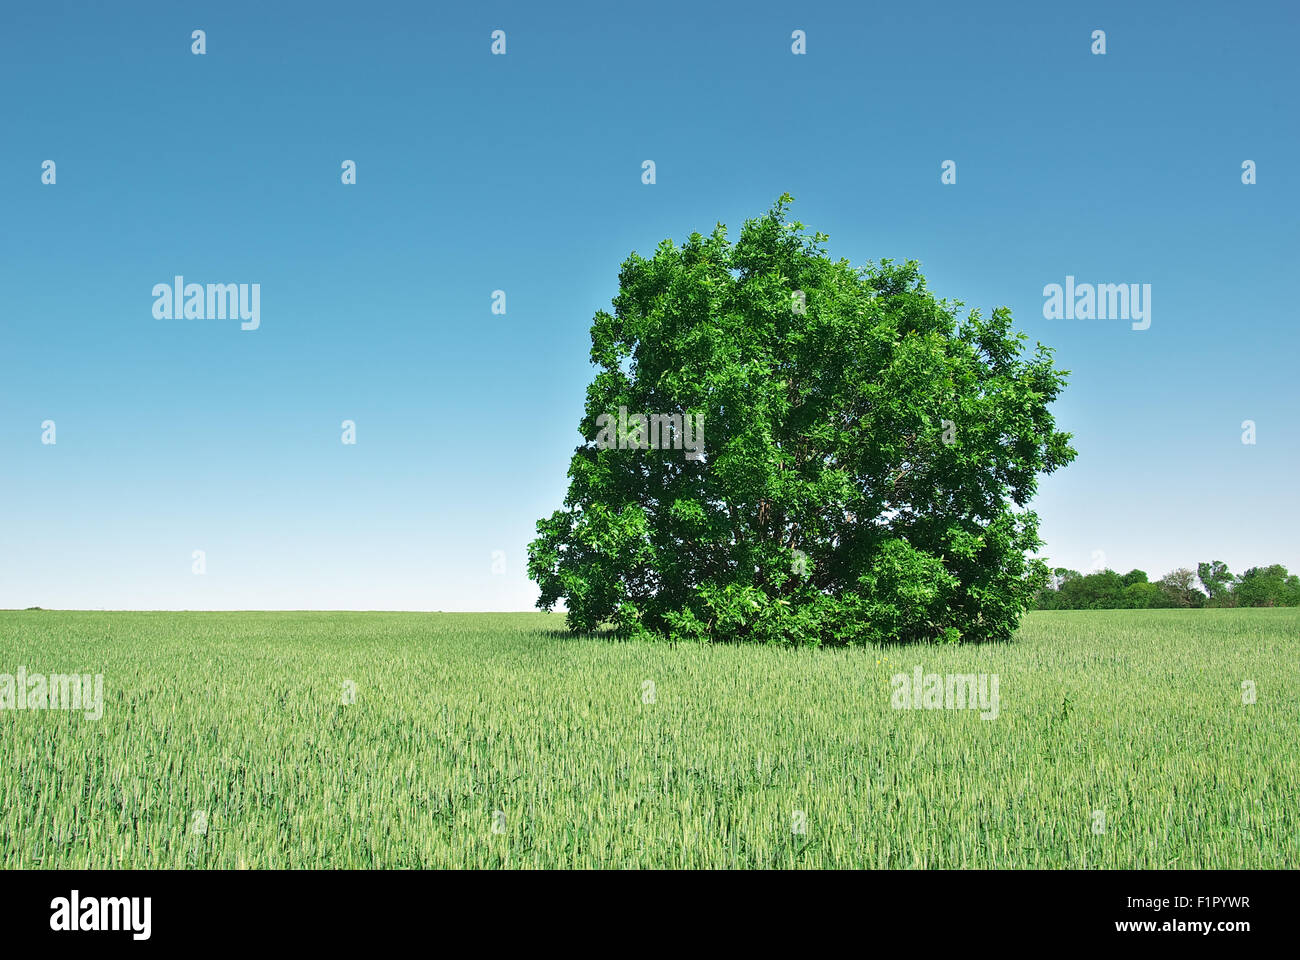 Einsamen großen grünen Baum in einem Feld von jungen Weizen. Natur-Komposition. Stockfoto